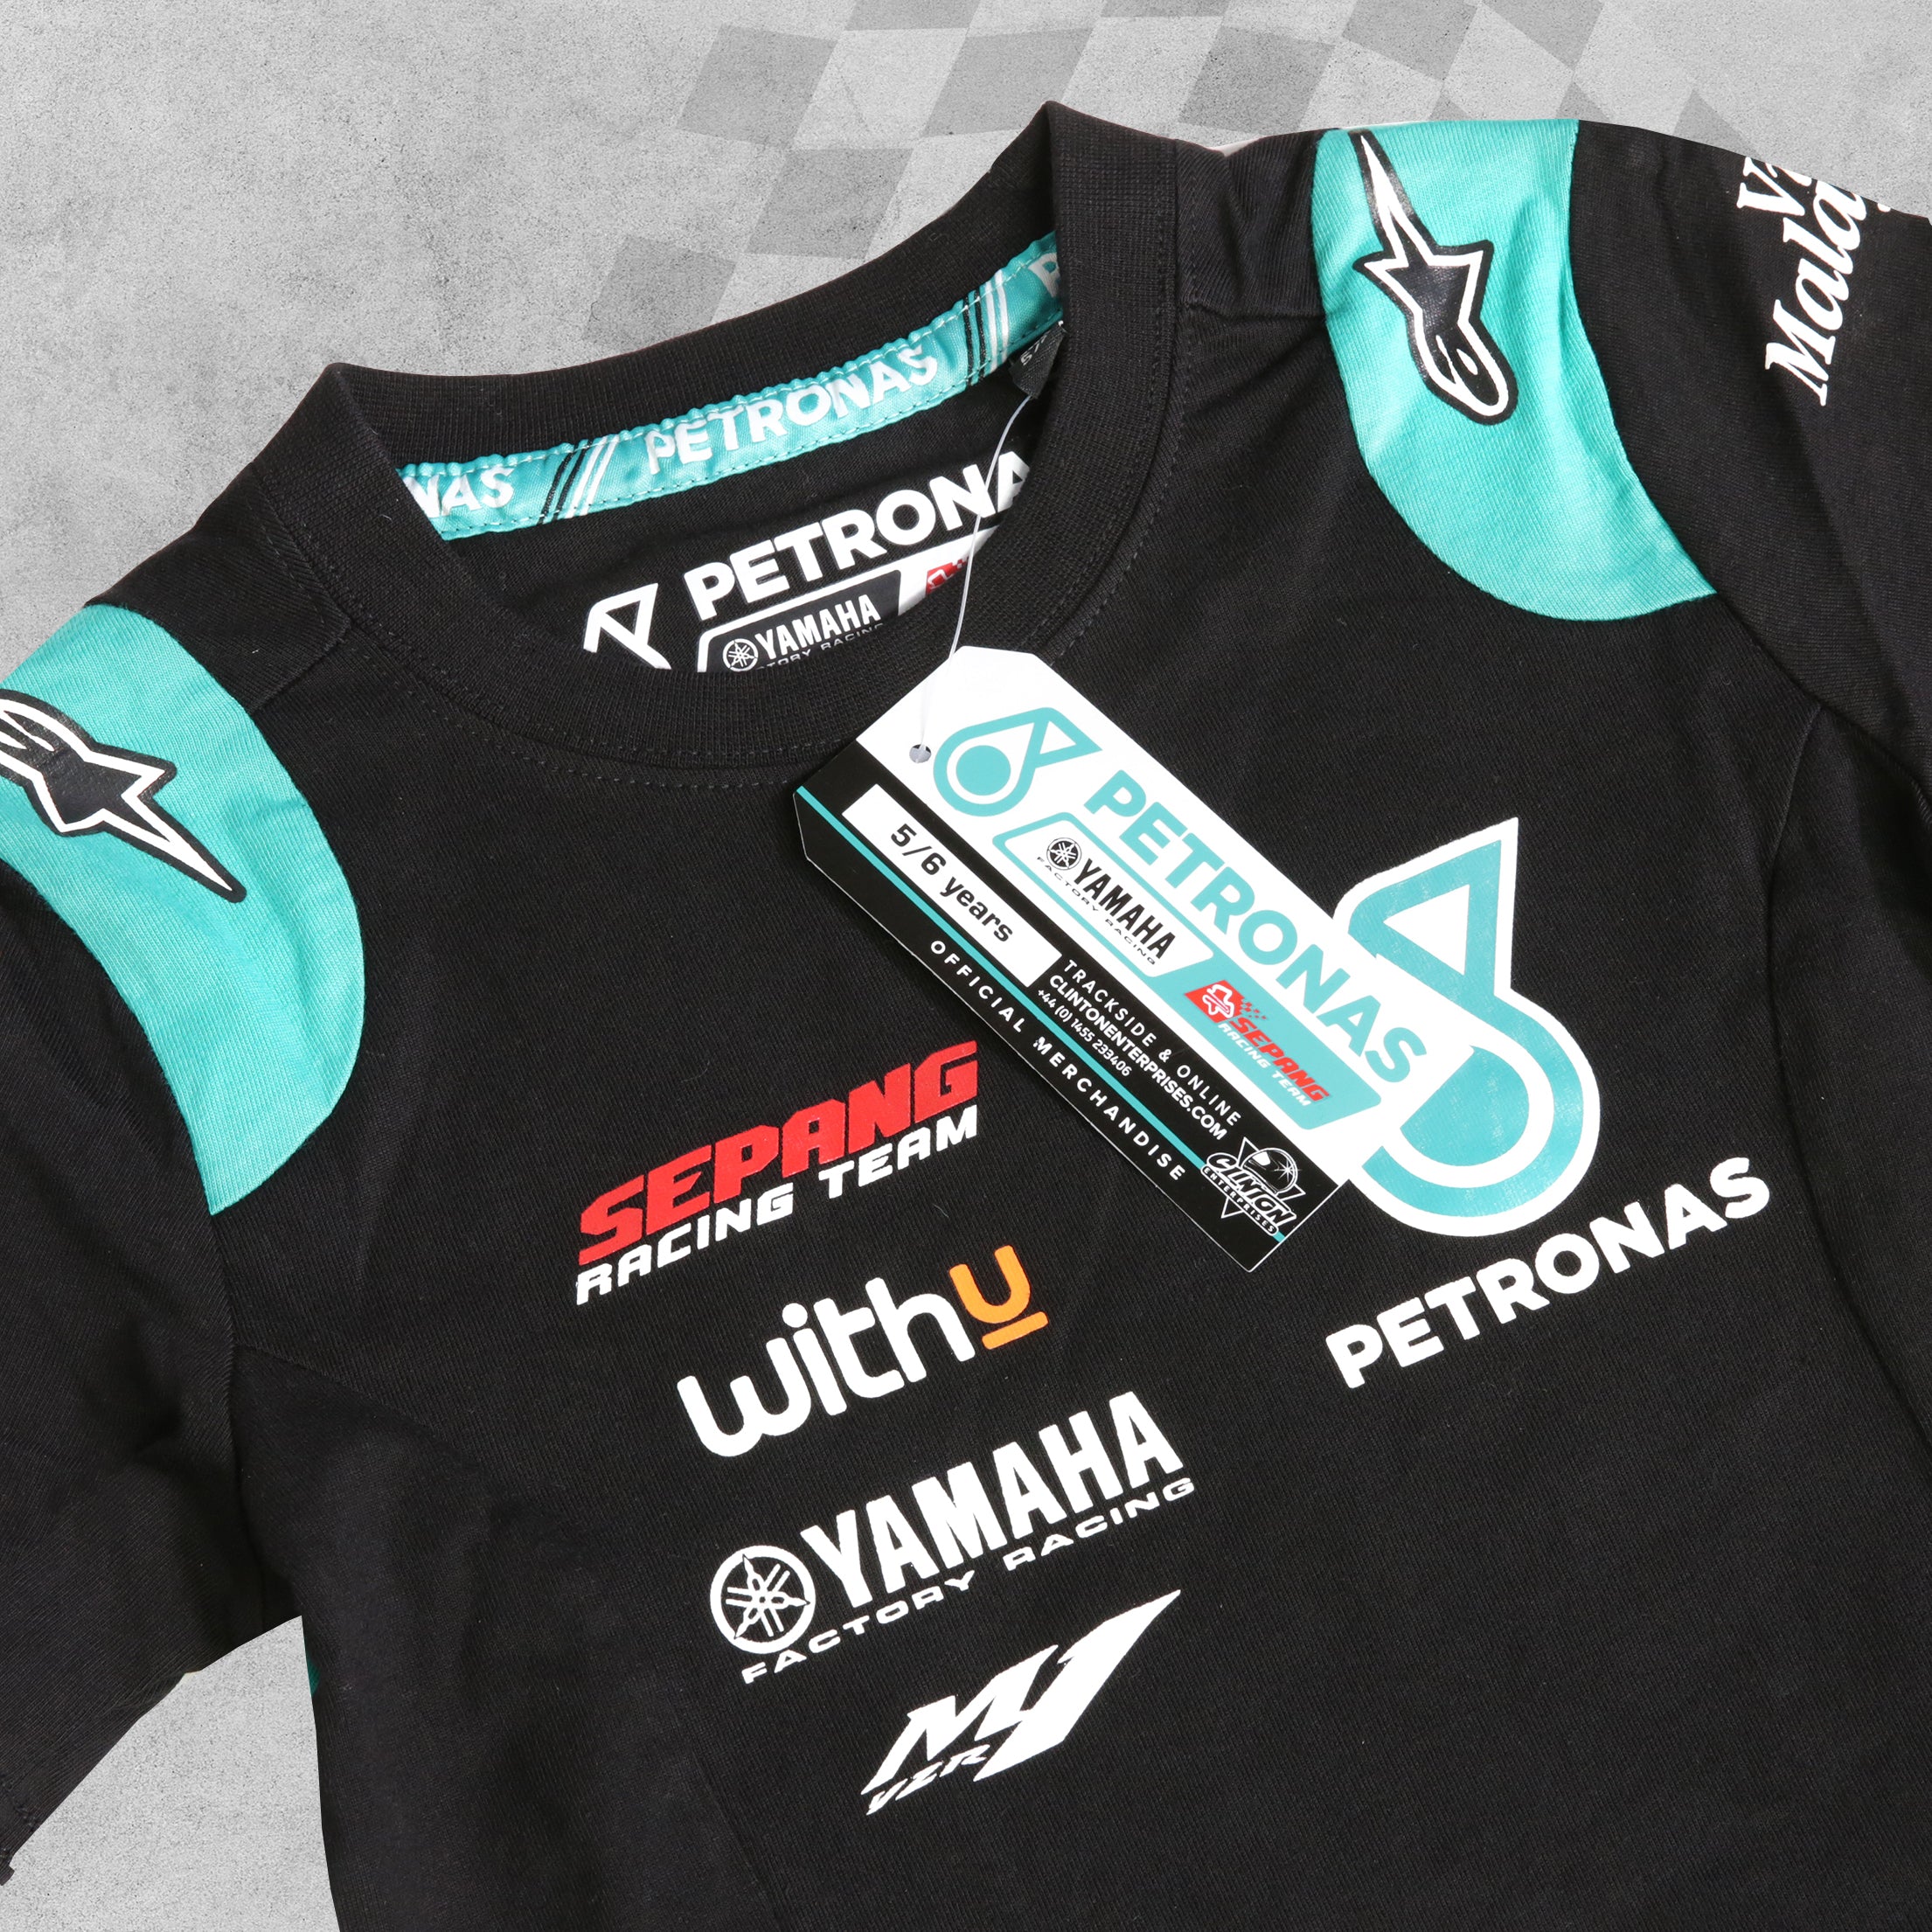 Official Petronas Yamaha Racing Kids T-Shirt